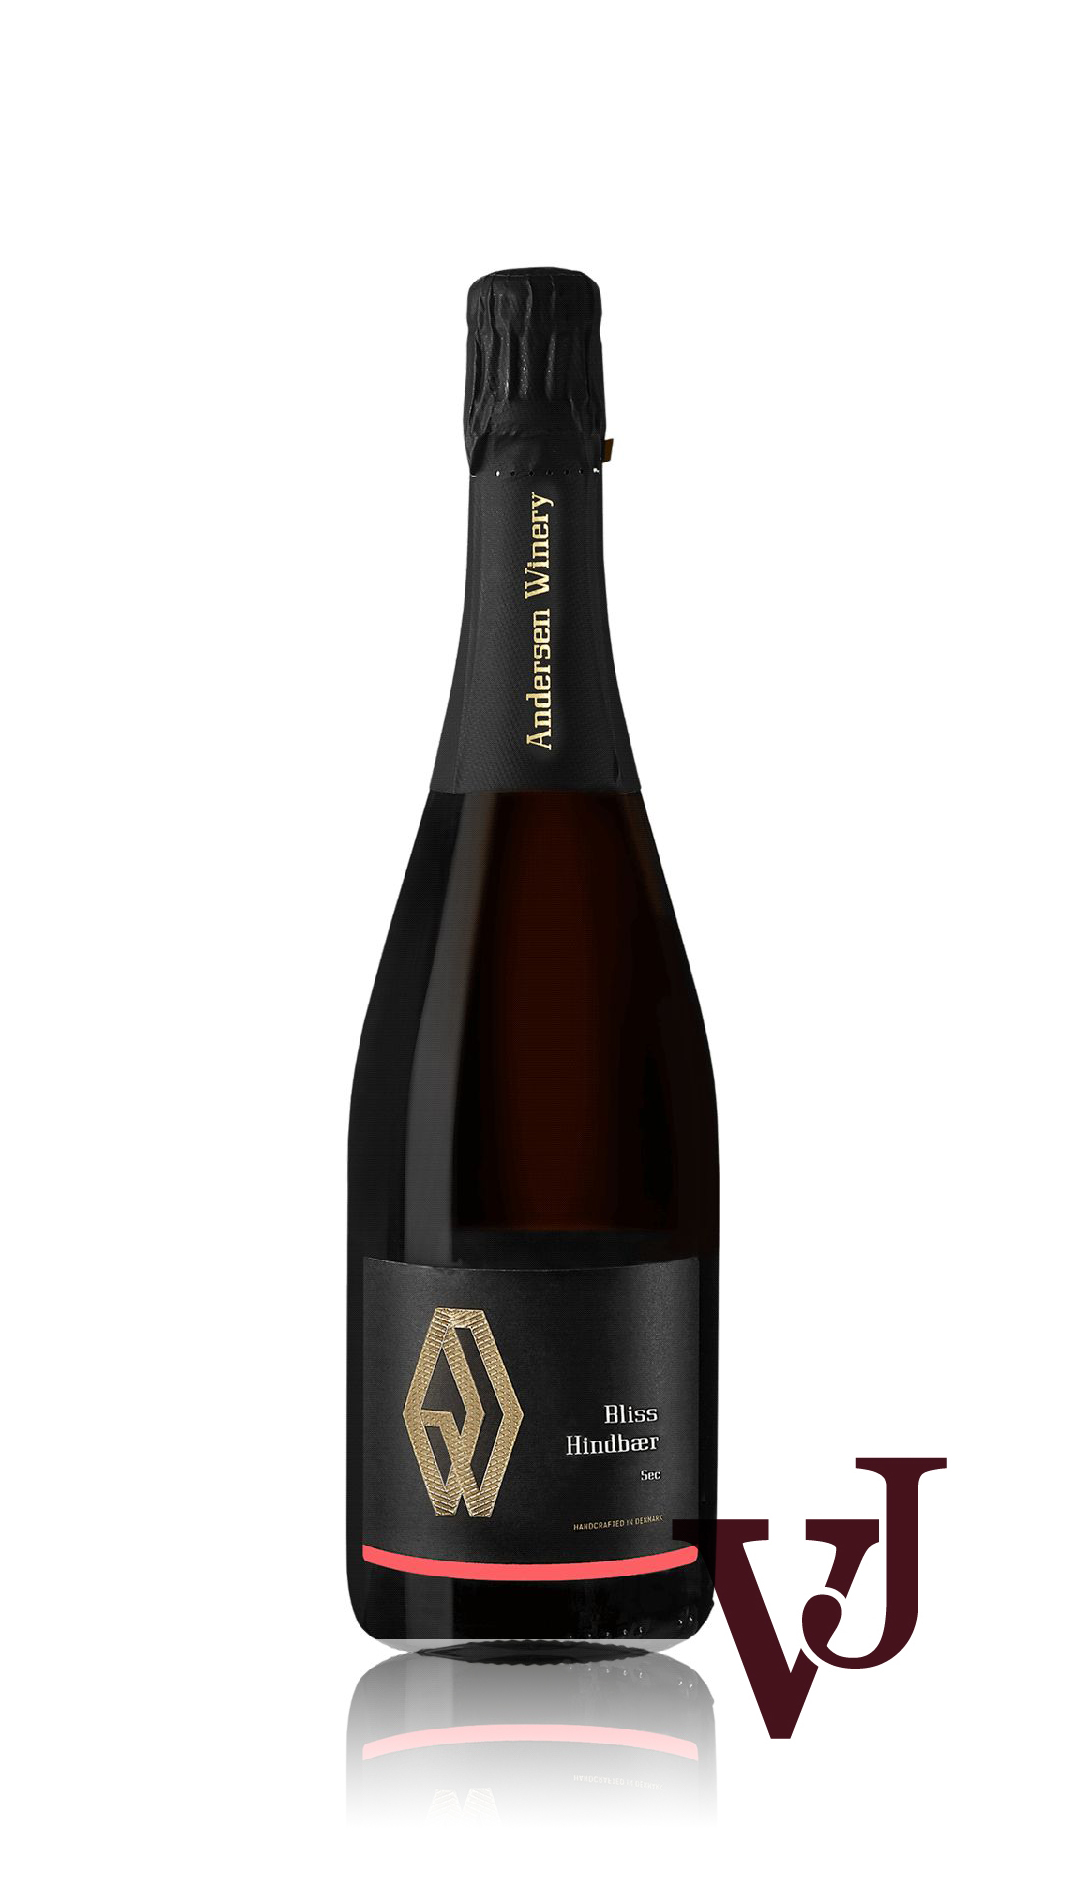 Mousserande Vin - Bliss Mousserande Hallonvin 2022 artikel nummer 7381001 från producenten Andersen Winery från Danmark.